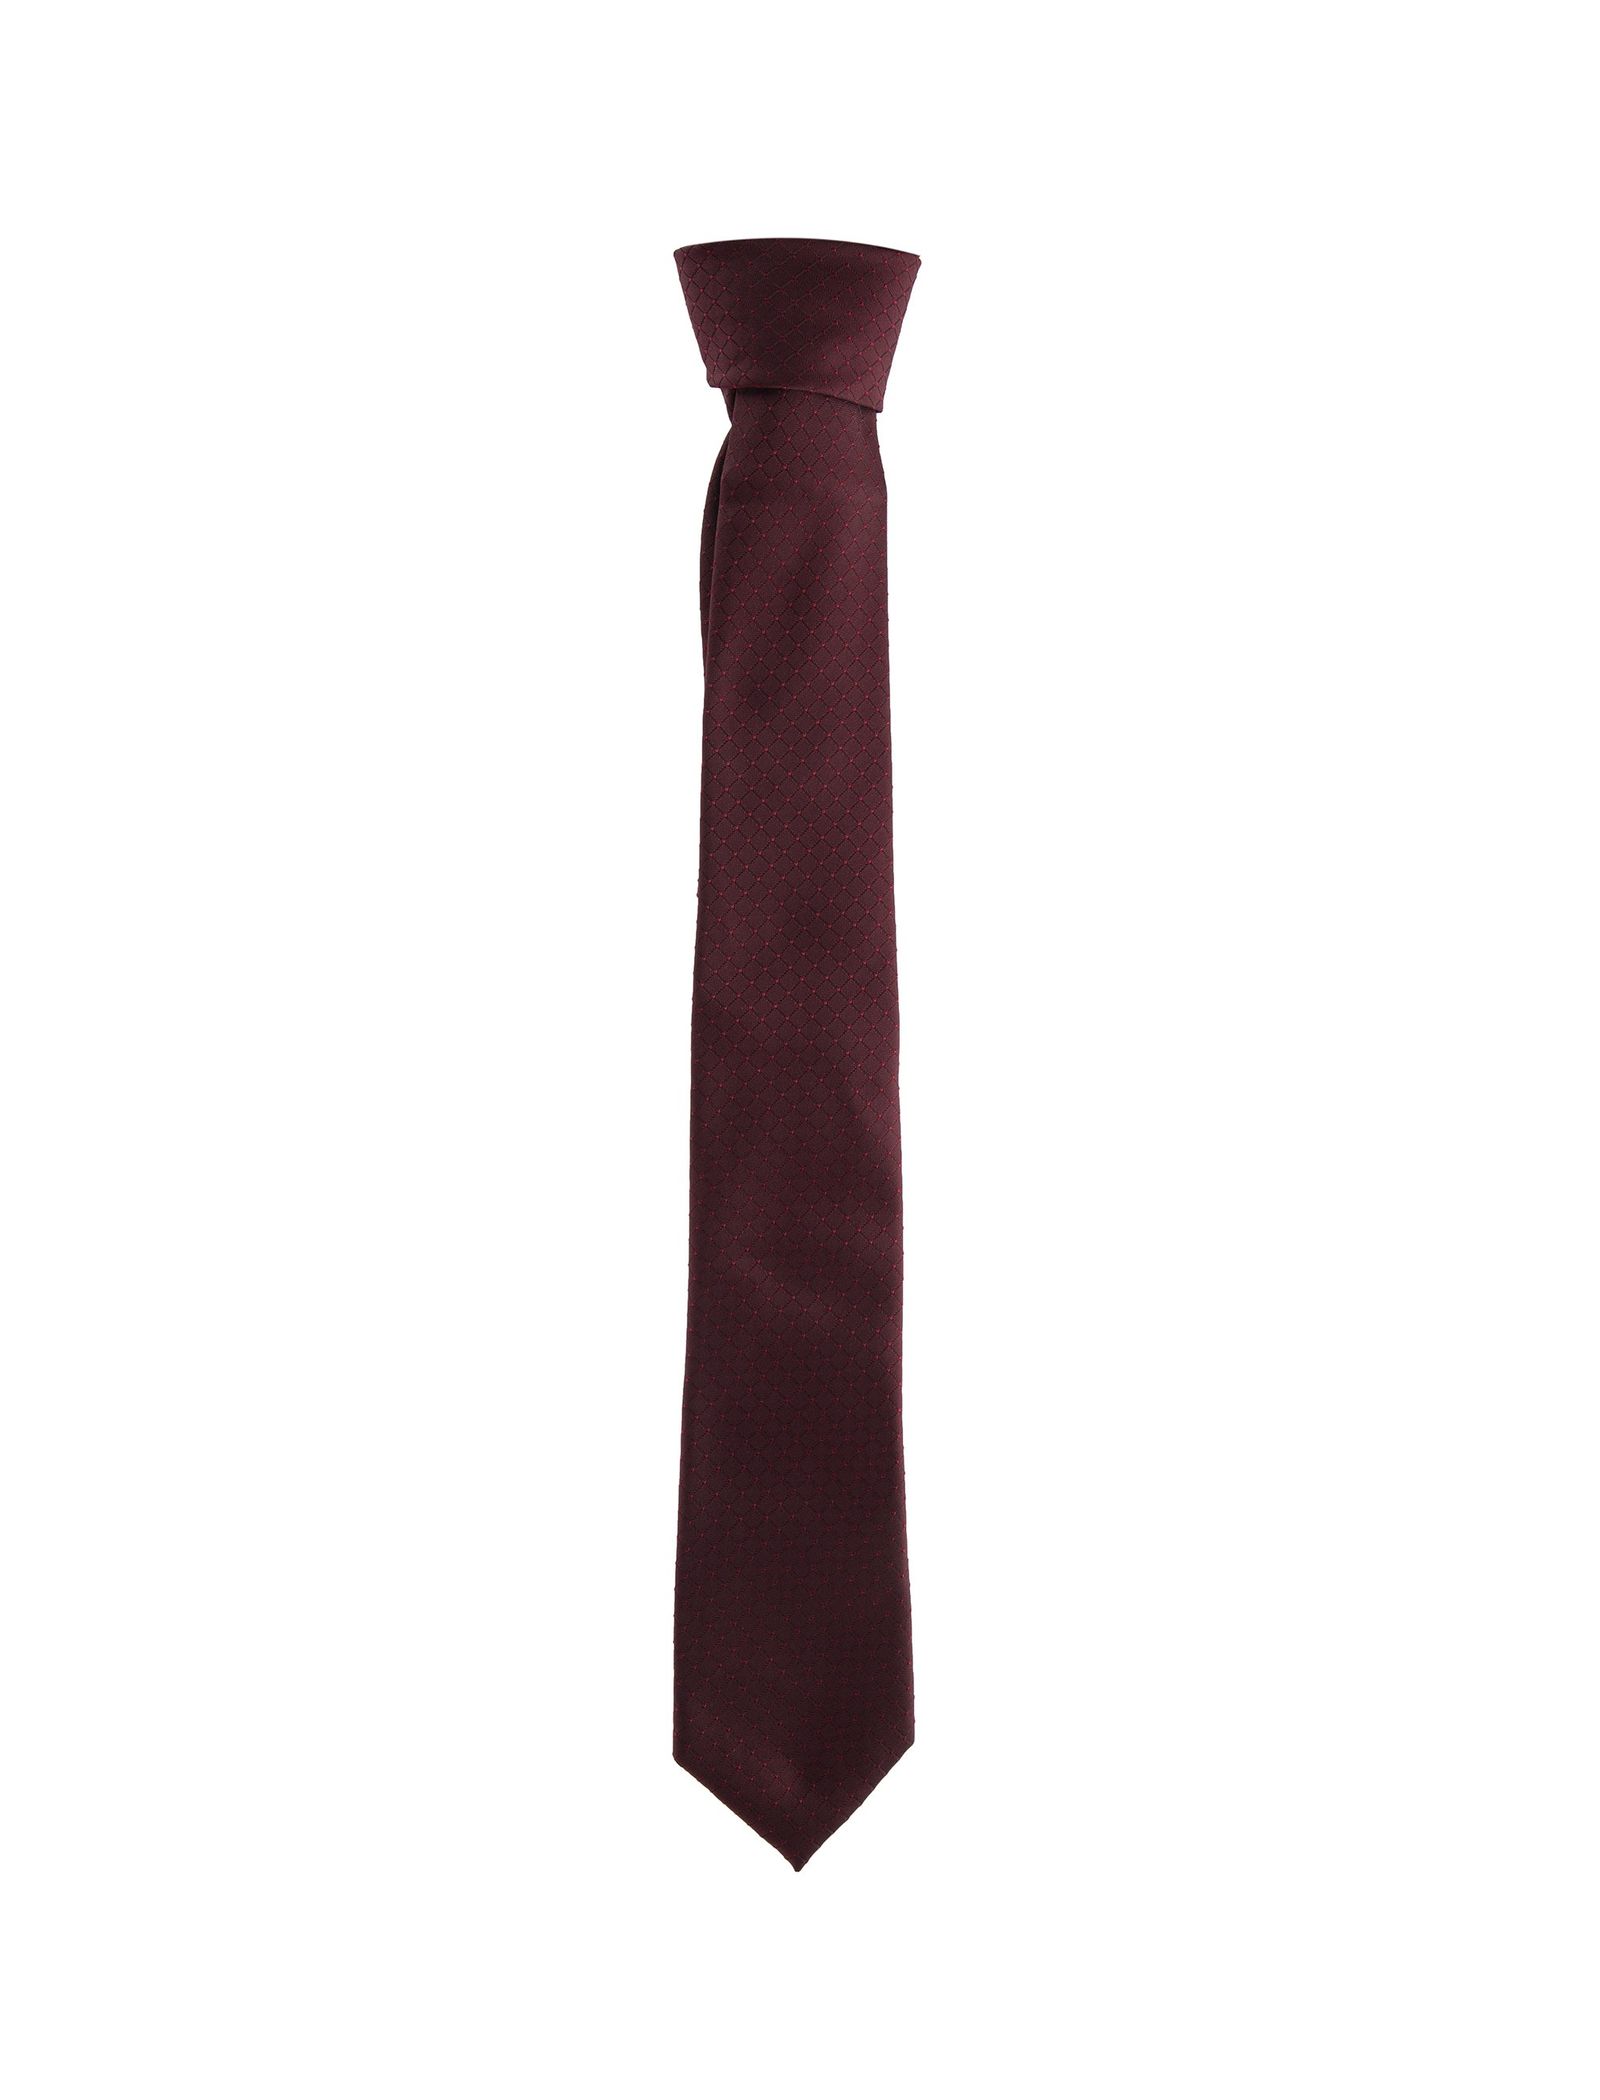 کراوات طرح دار مردانه - یوپیم - قرمز - 1